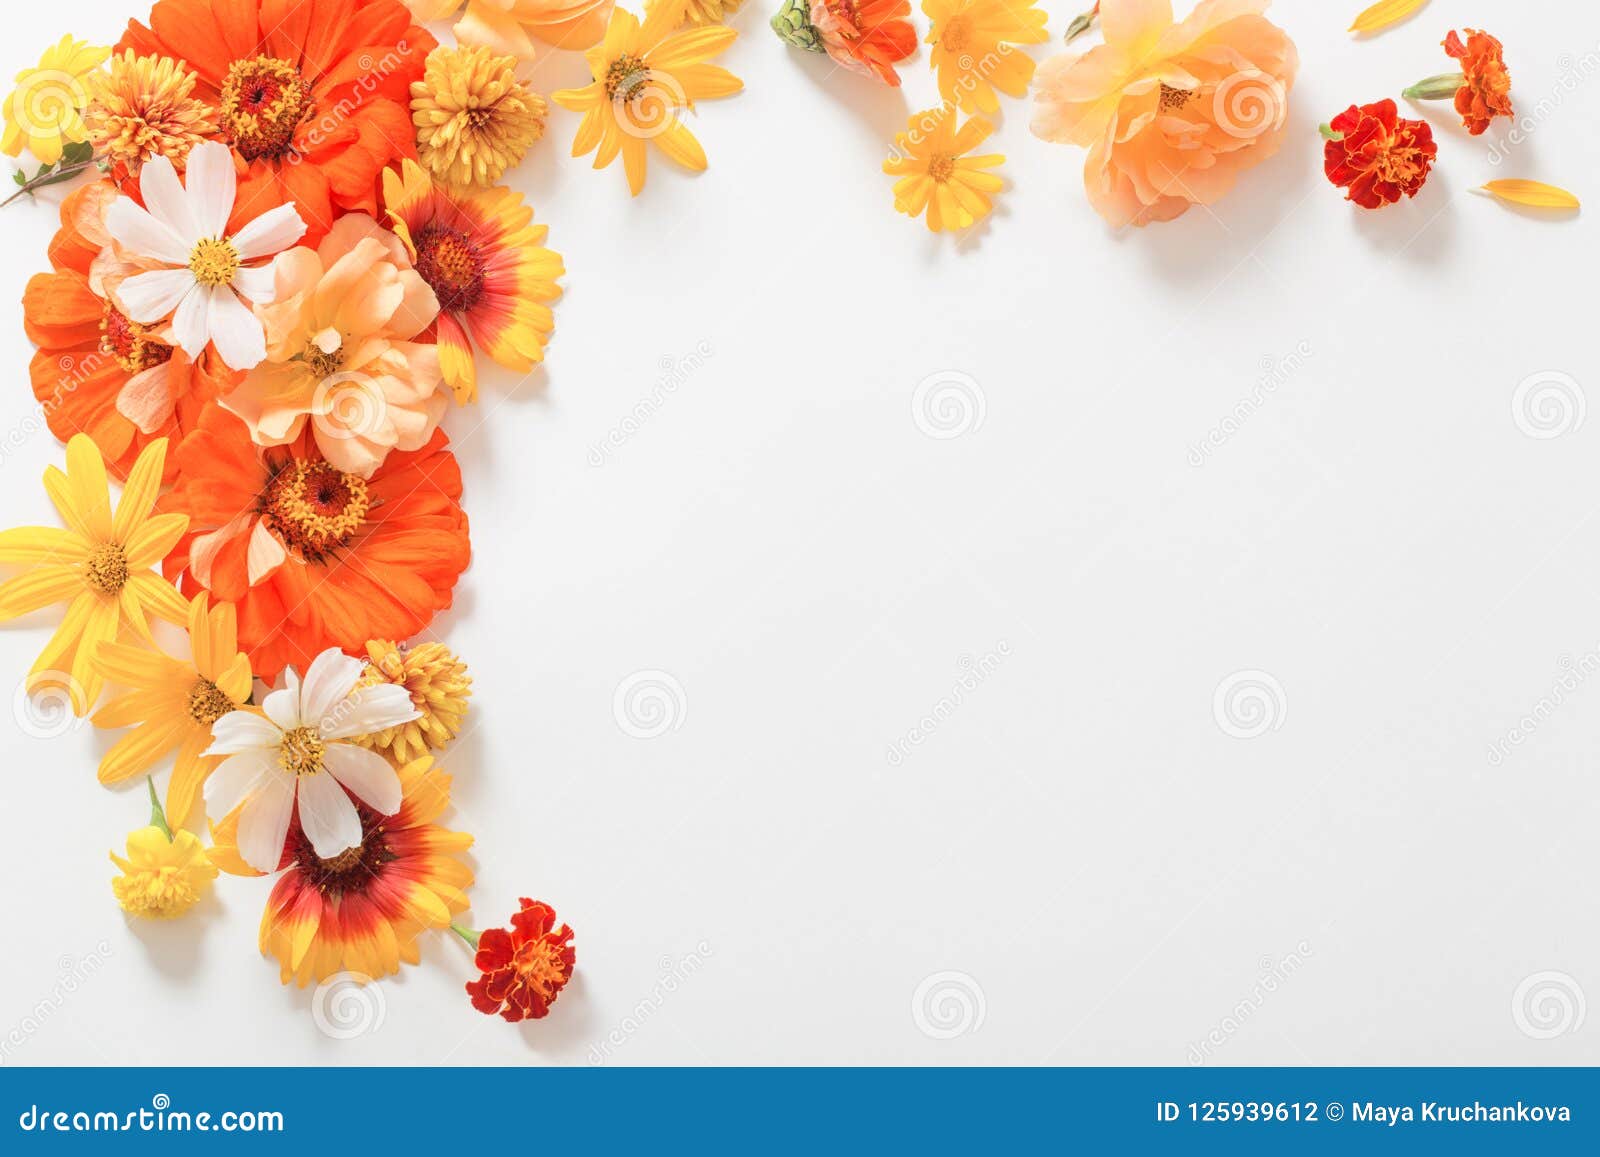 orange flower background